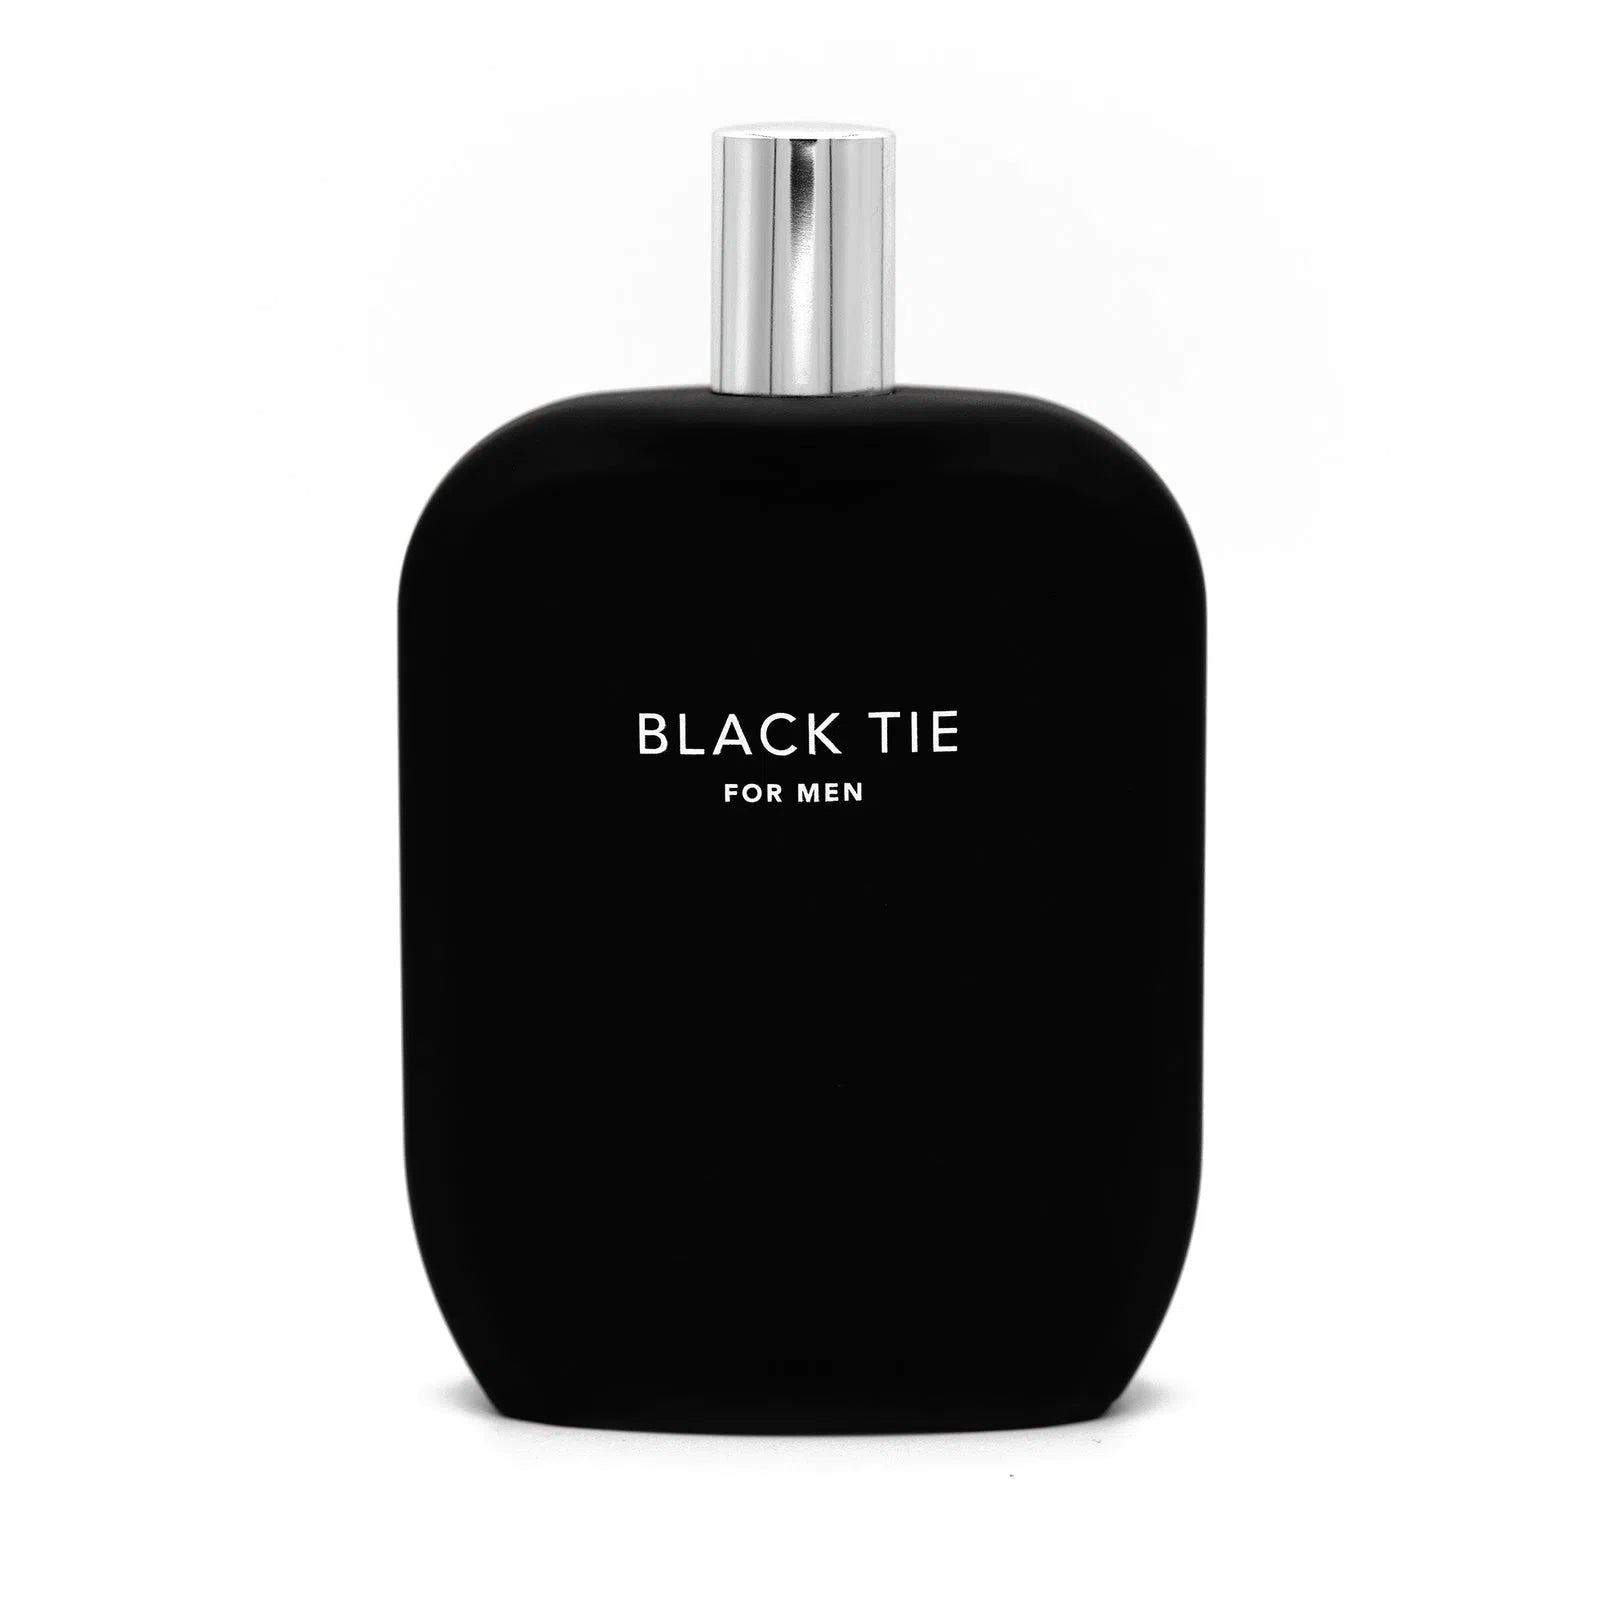 Perfume Jeremy Fragrance Black Tie for Men Extrait de Parfum (M) / 100 ml - 4260650380372- Prive Perfumes Honduras